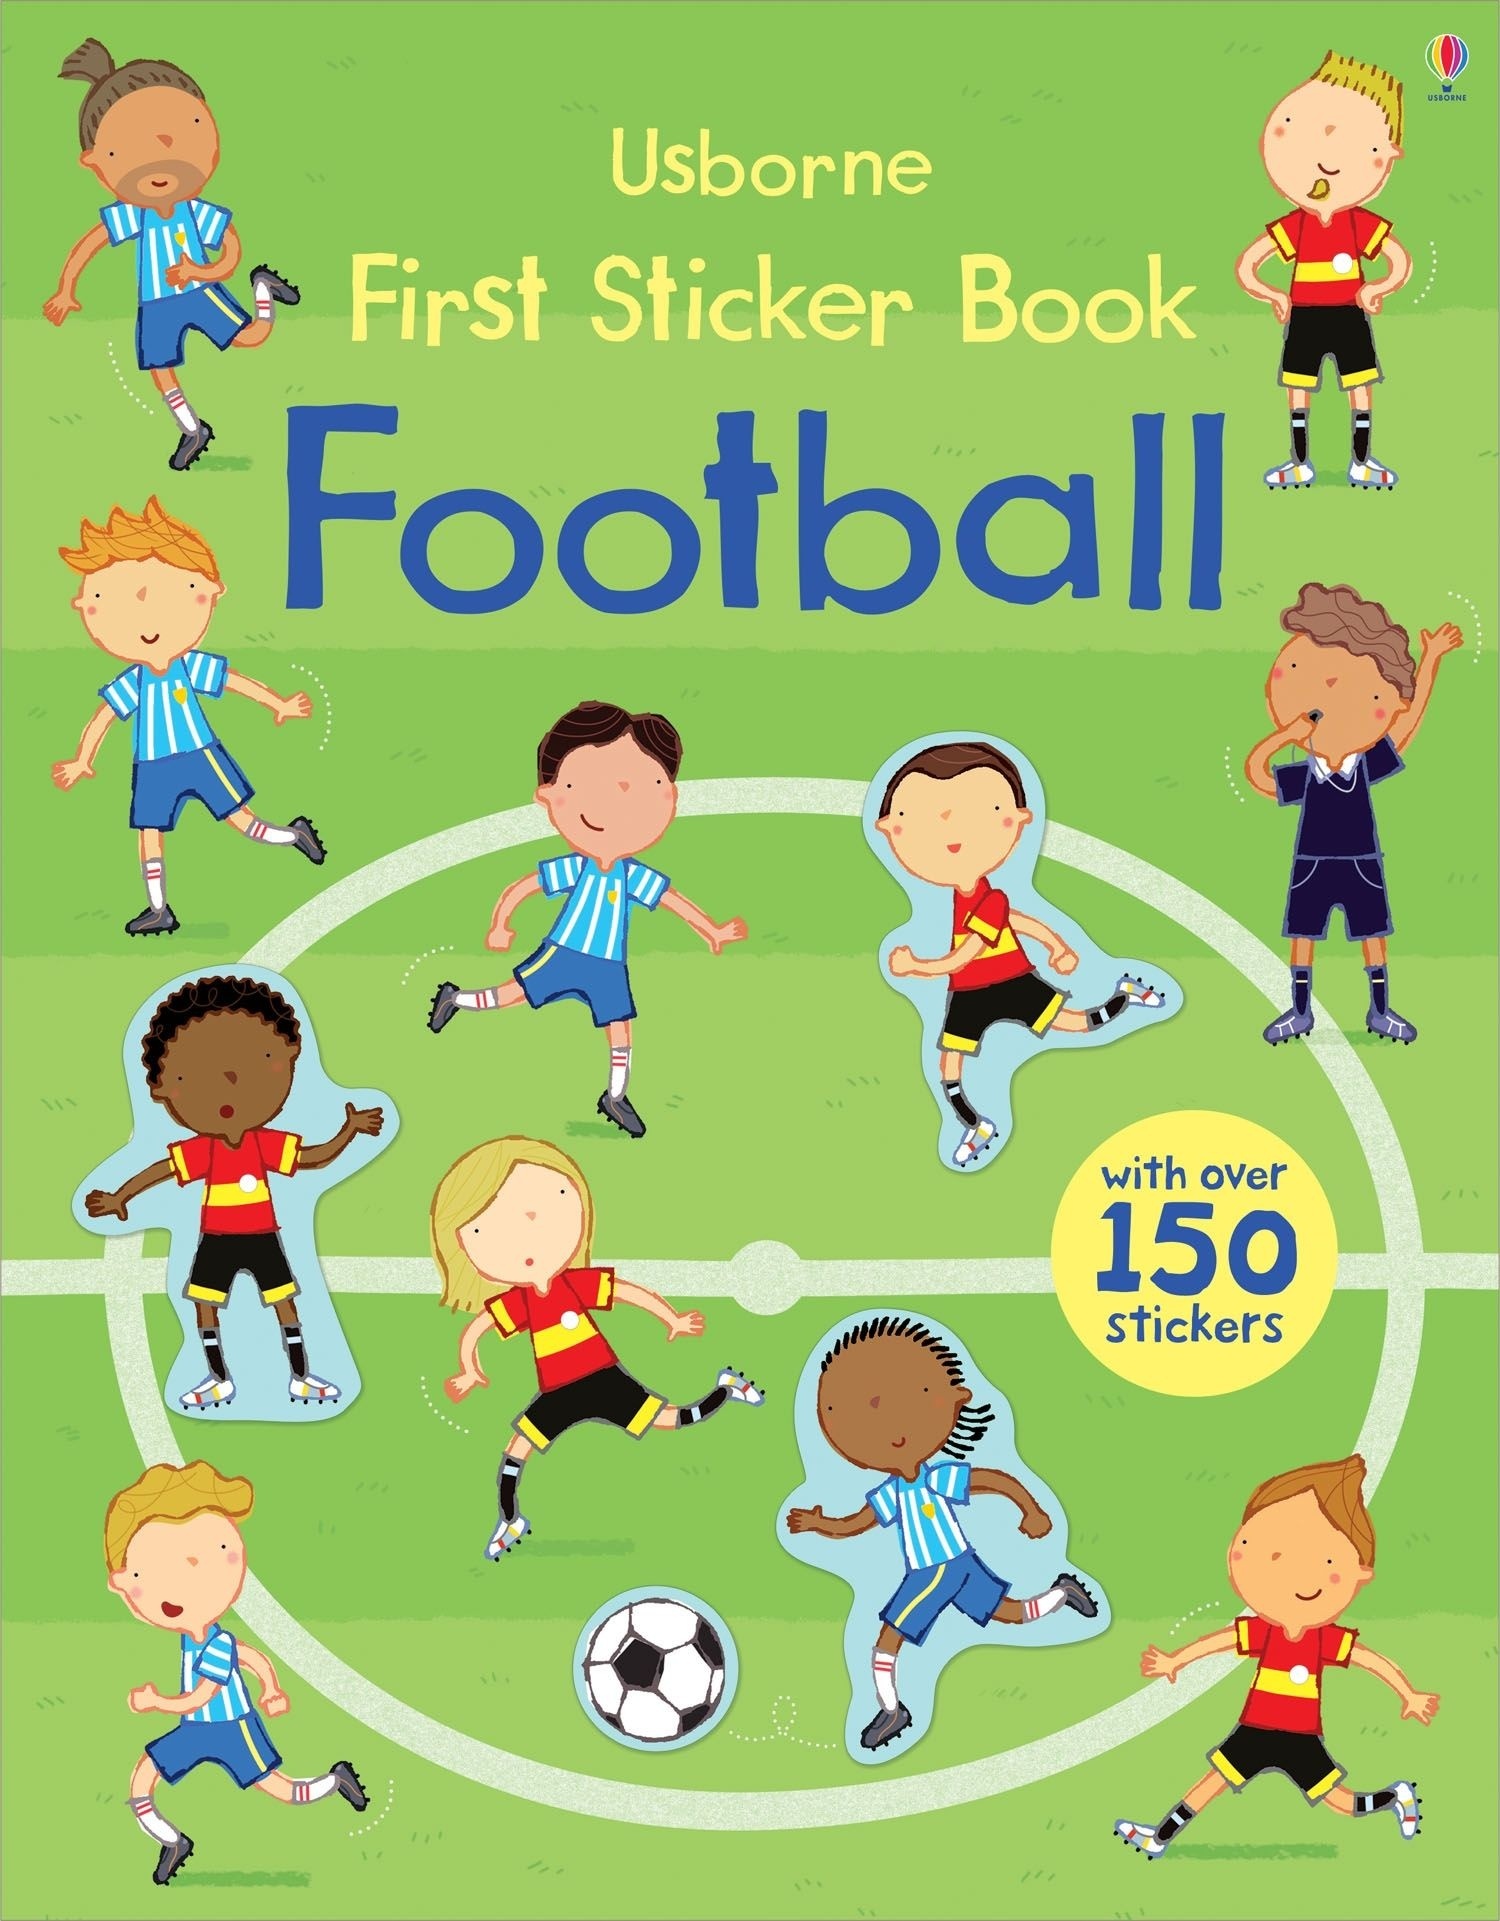 First Sticker Book Football